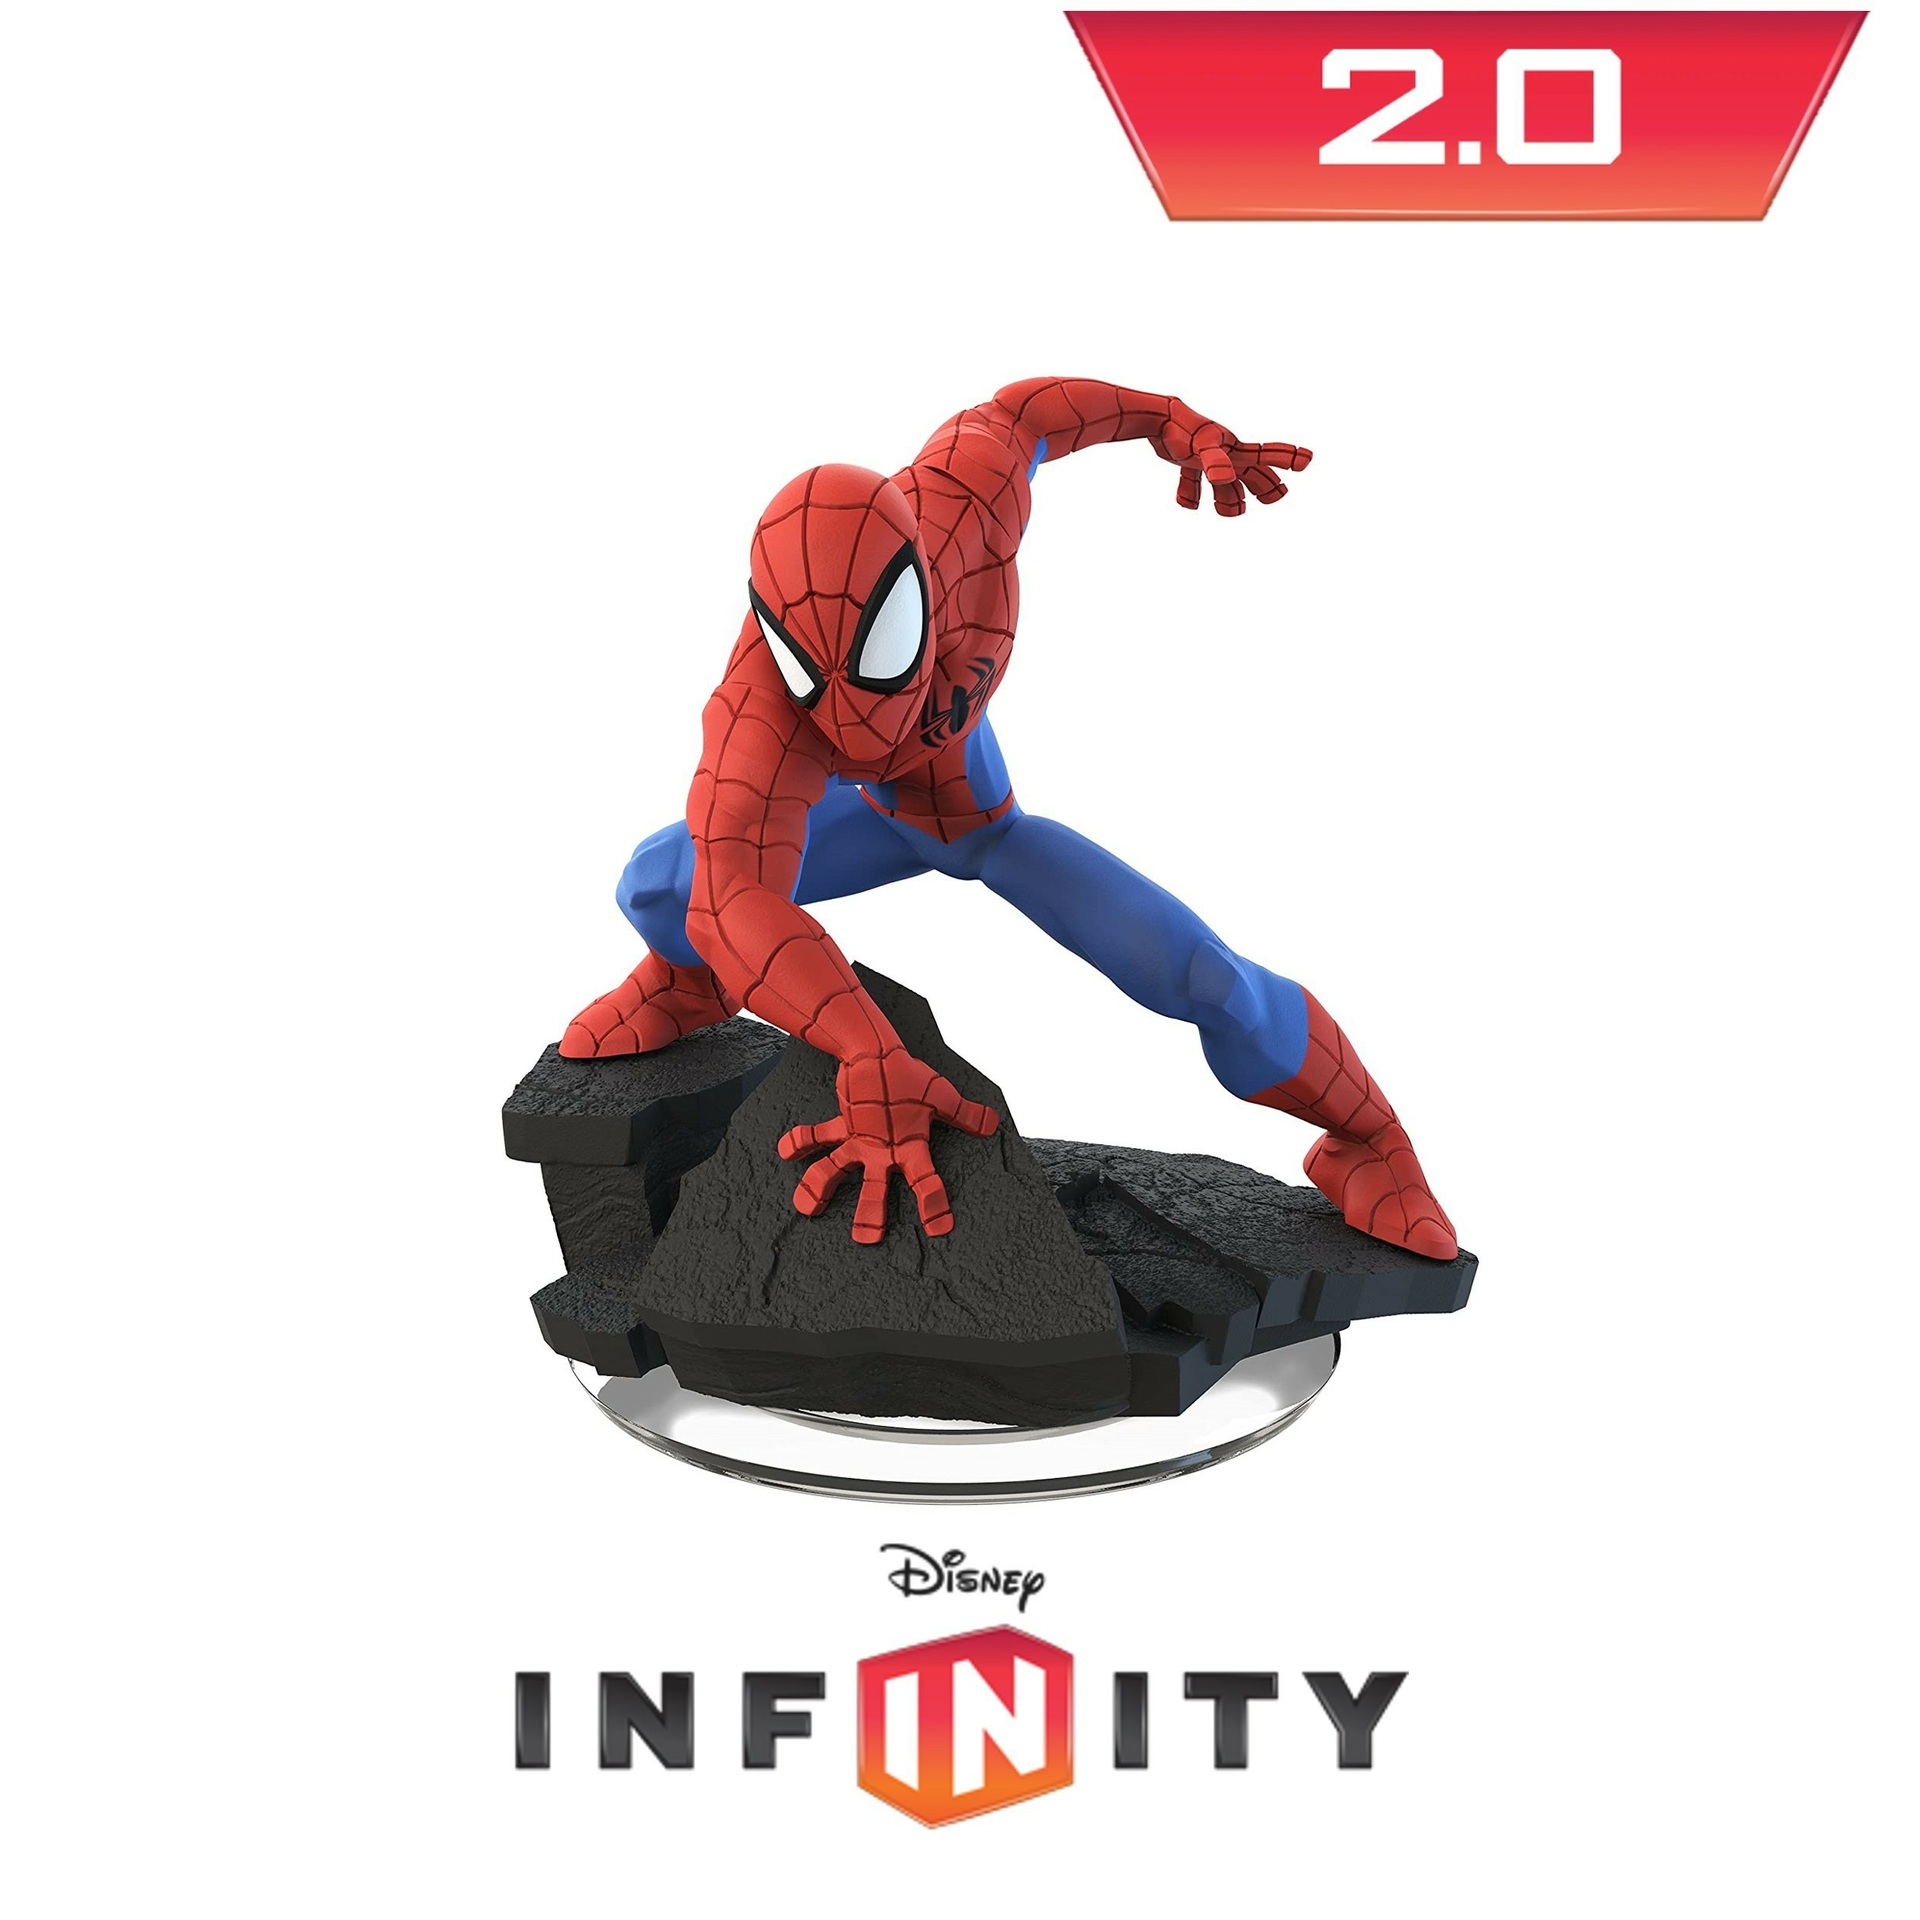 Disney Infinity - Spider-Man - Wii Hardware